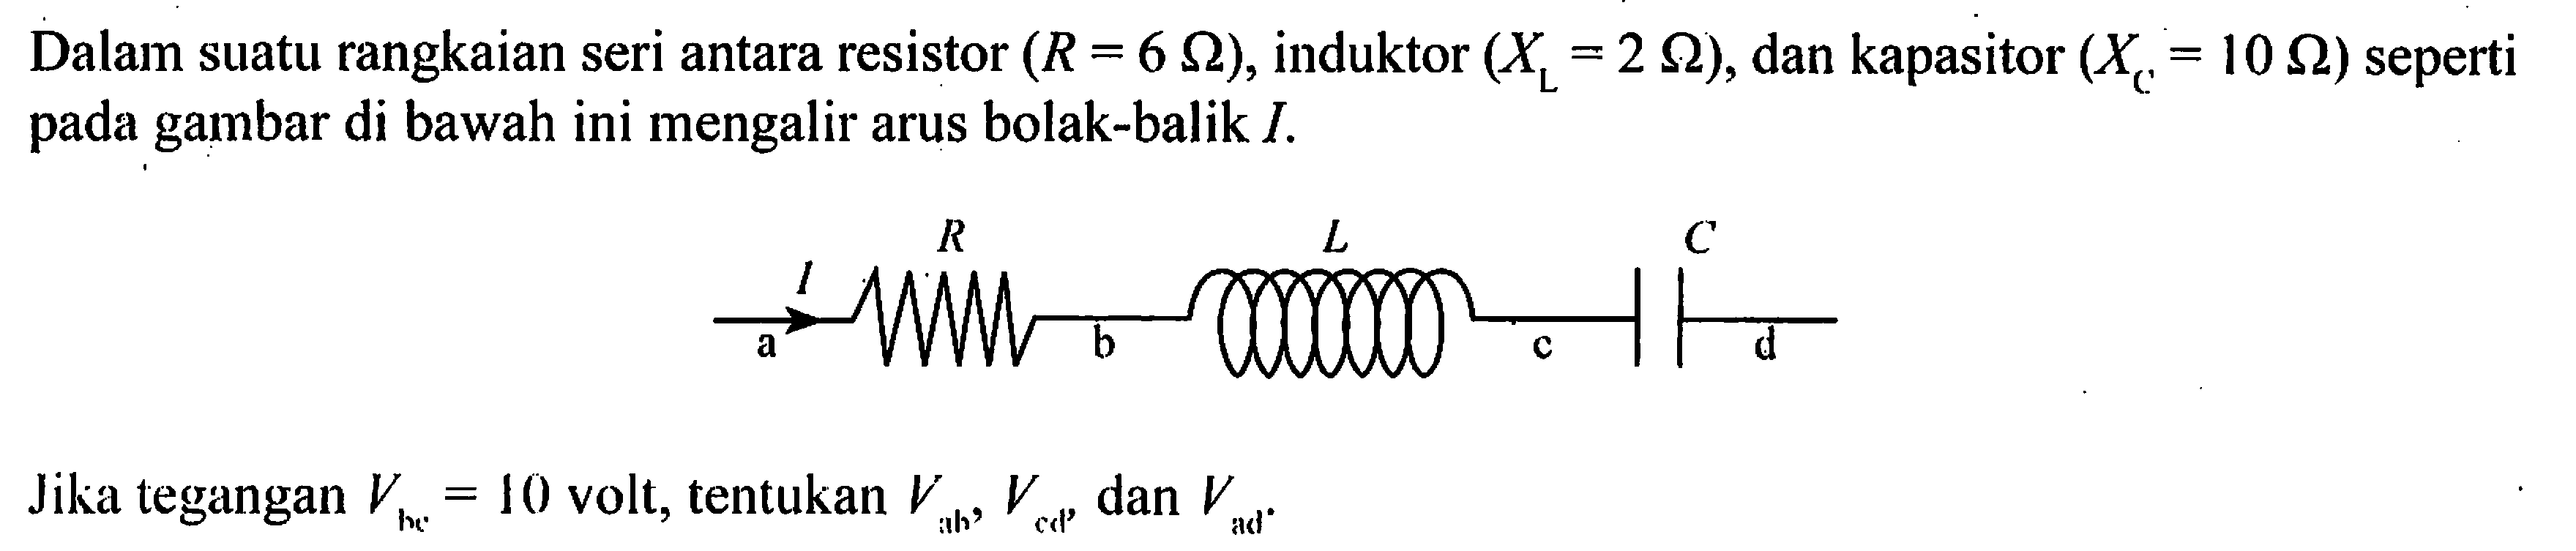 Dalam suatu rangkaian seri antara resistor (R = 6 Ohm), induktor (XL = 2 Ohm), dan kapasitor (XC = 10 Ohm) seperti pada gambar di bawah ini mengalir arus bolak-balik I. R L C I a b c d Jika tegangan Vbc = 10 volt, tentukan Vab, Vcd, dan Vad.